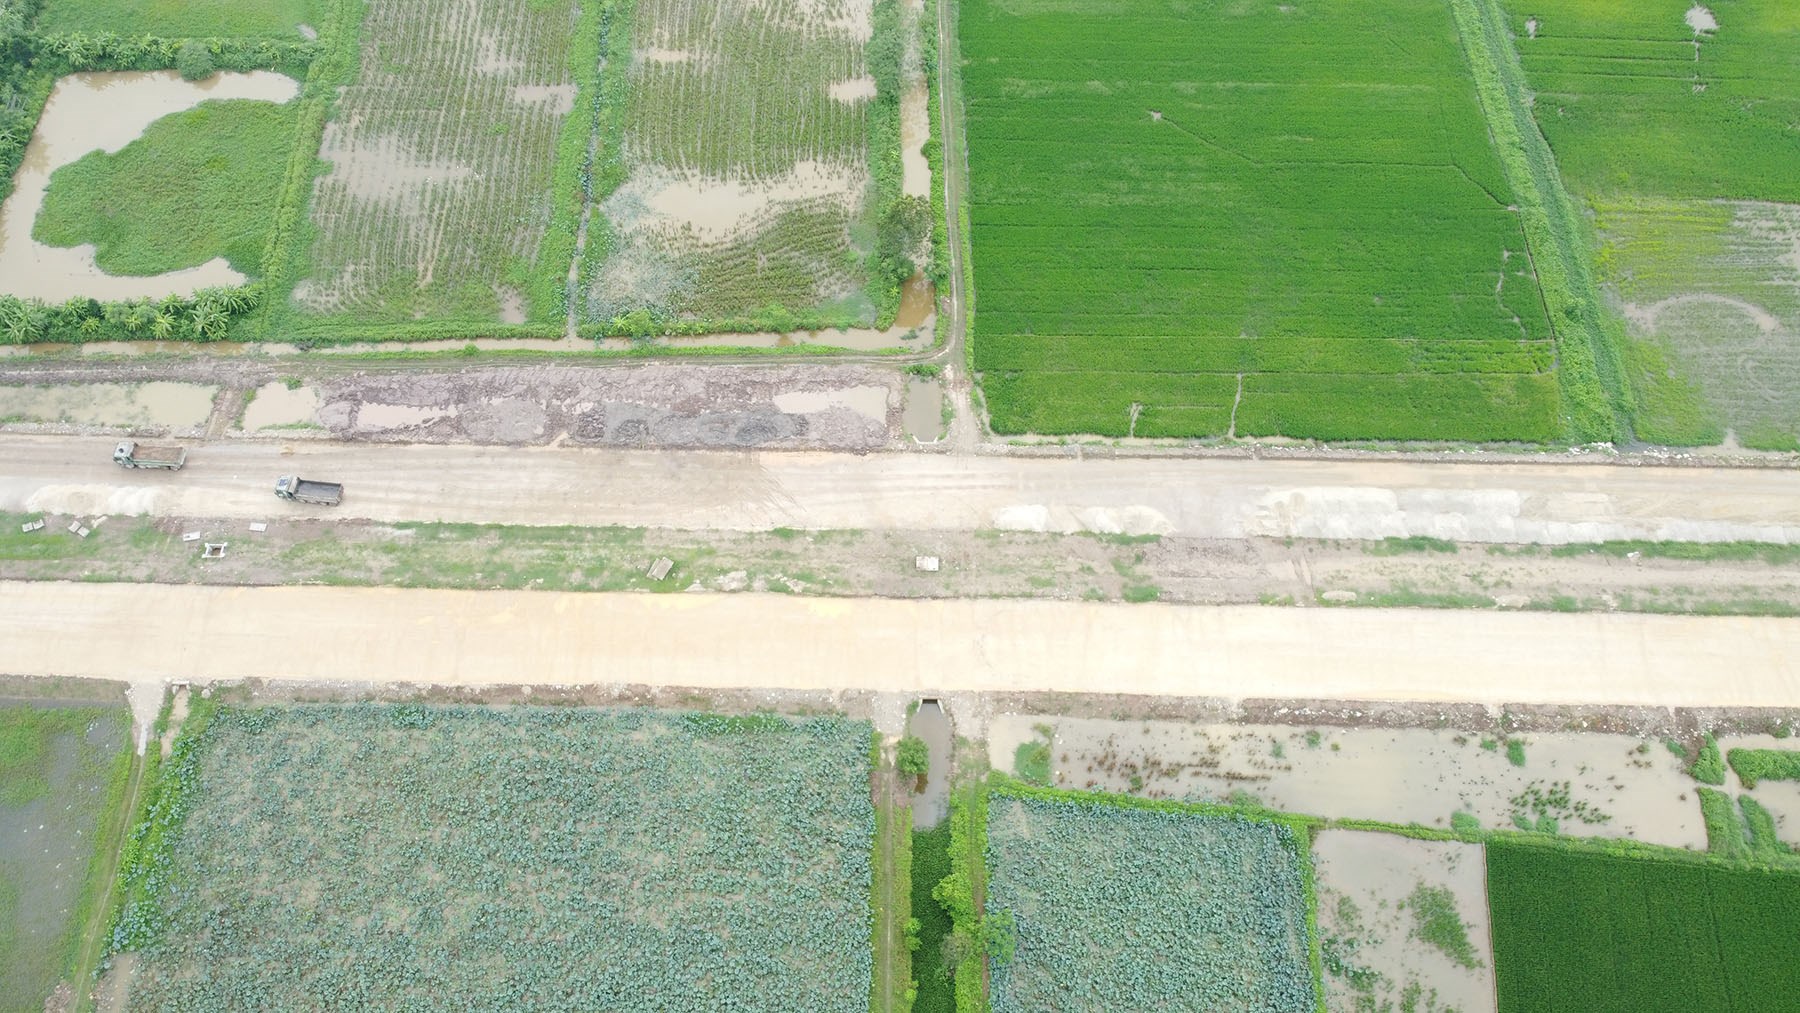 Toàn cảnh vị trí dự kiến xây cầu vượt sông Long Xuyên đoạn KCN Thái Hà ở Lý Nhân, Hà Nam